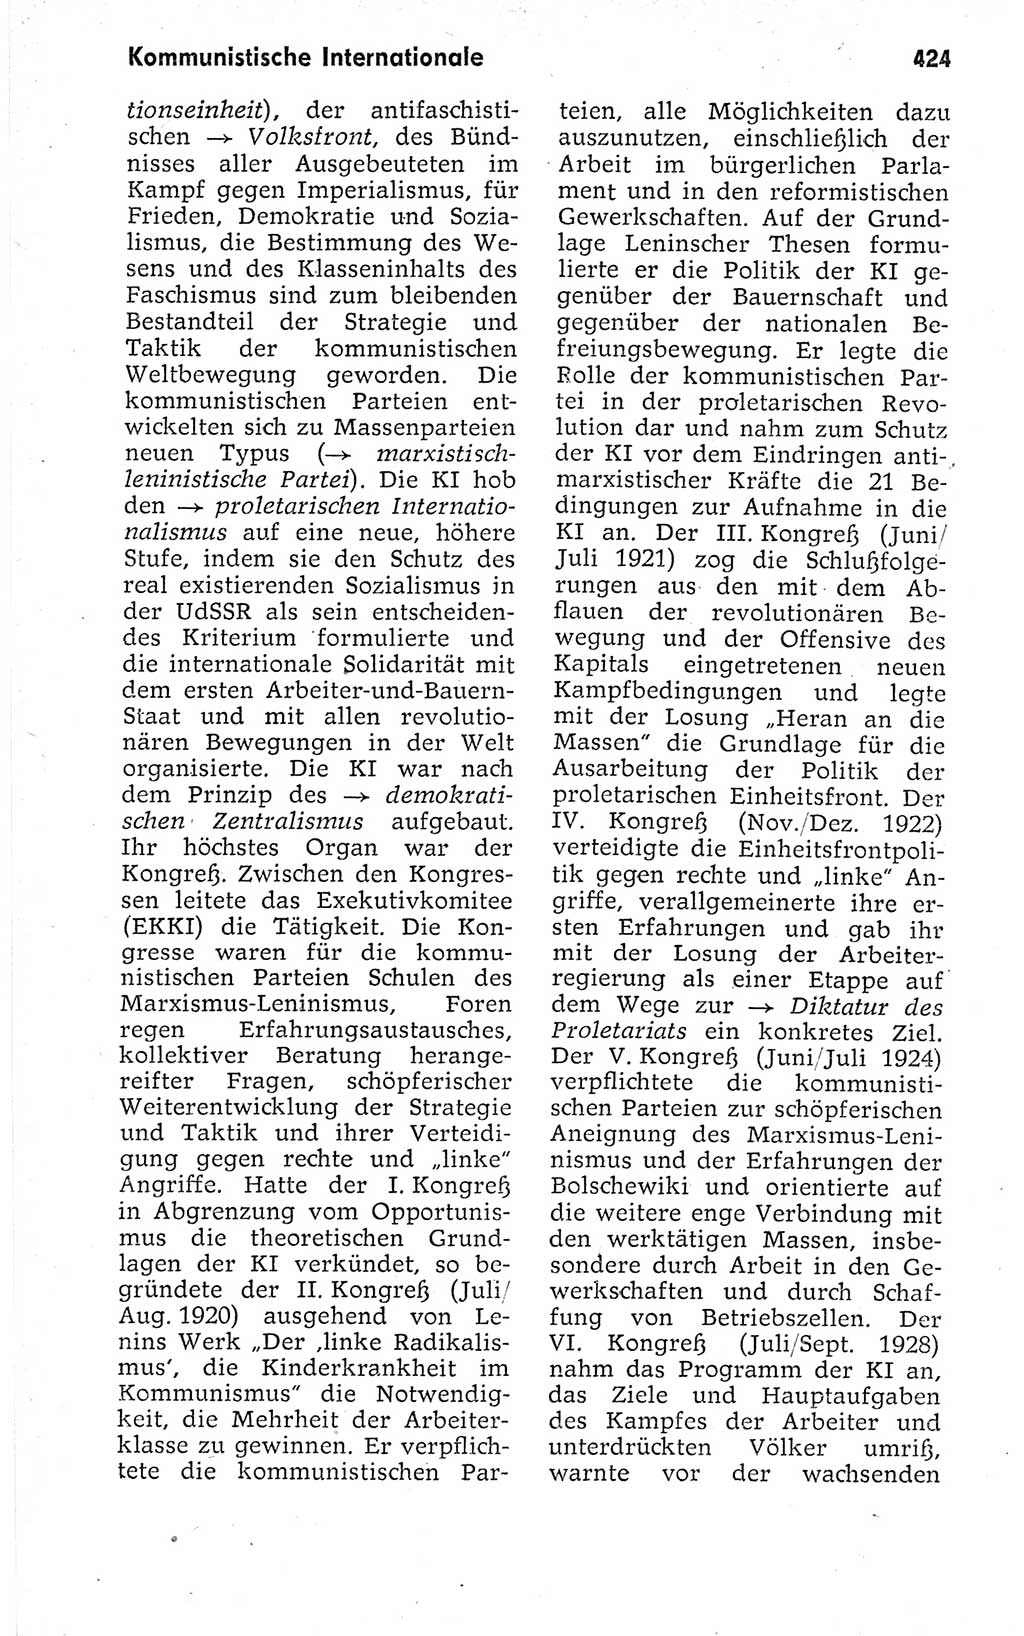 Kleines politisches Wörterbuch [Deutsche Demokratische Republik (DDR)] 1973, Seite 424 (Kl. pol. Wb. DDR 1973, S. 424)